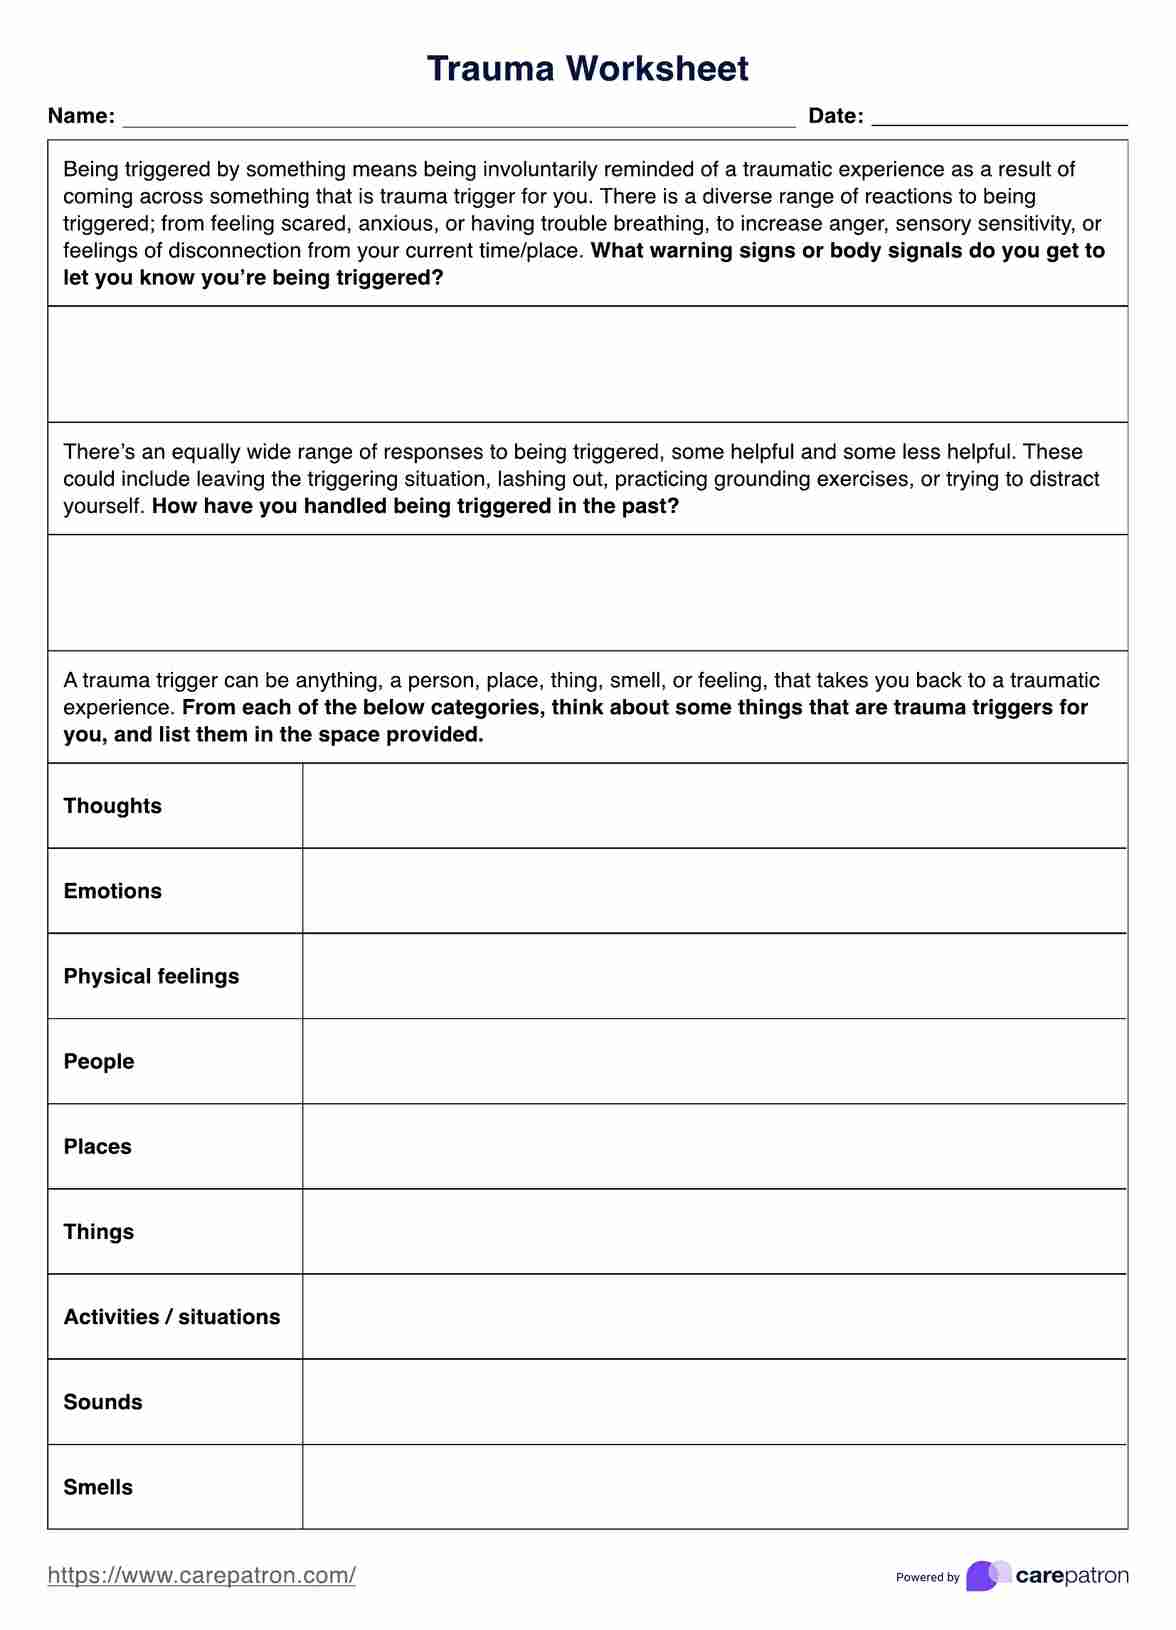 Trauma Worksheets PDF Example